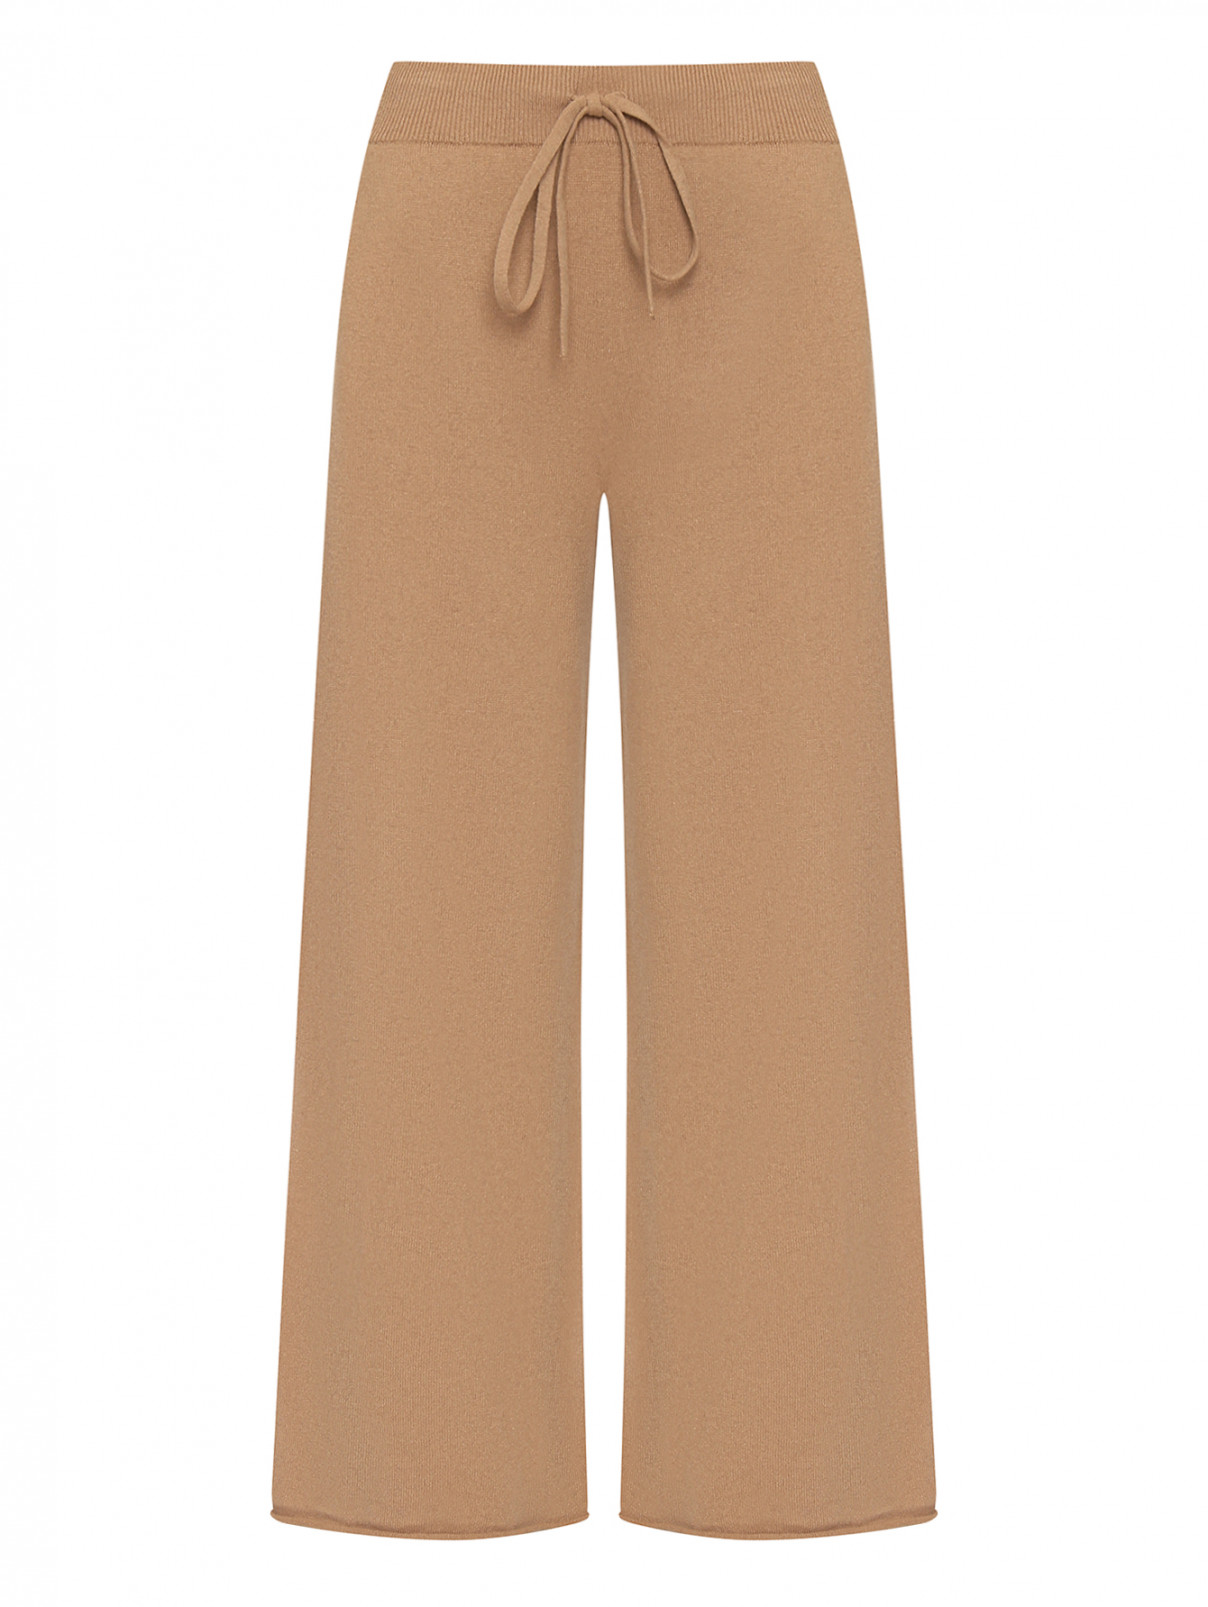 Трикотажные брюки на резинке с карманами Liviana Conti  –  Общий вид  – Цвет:  Бежевый